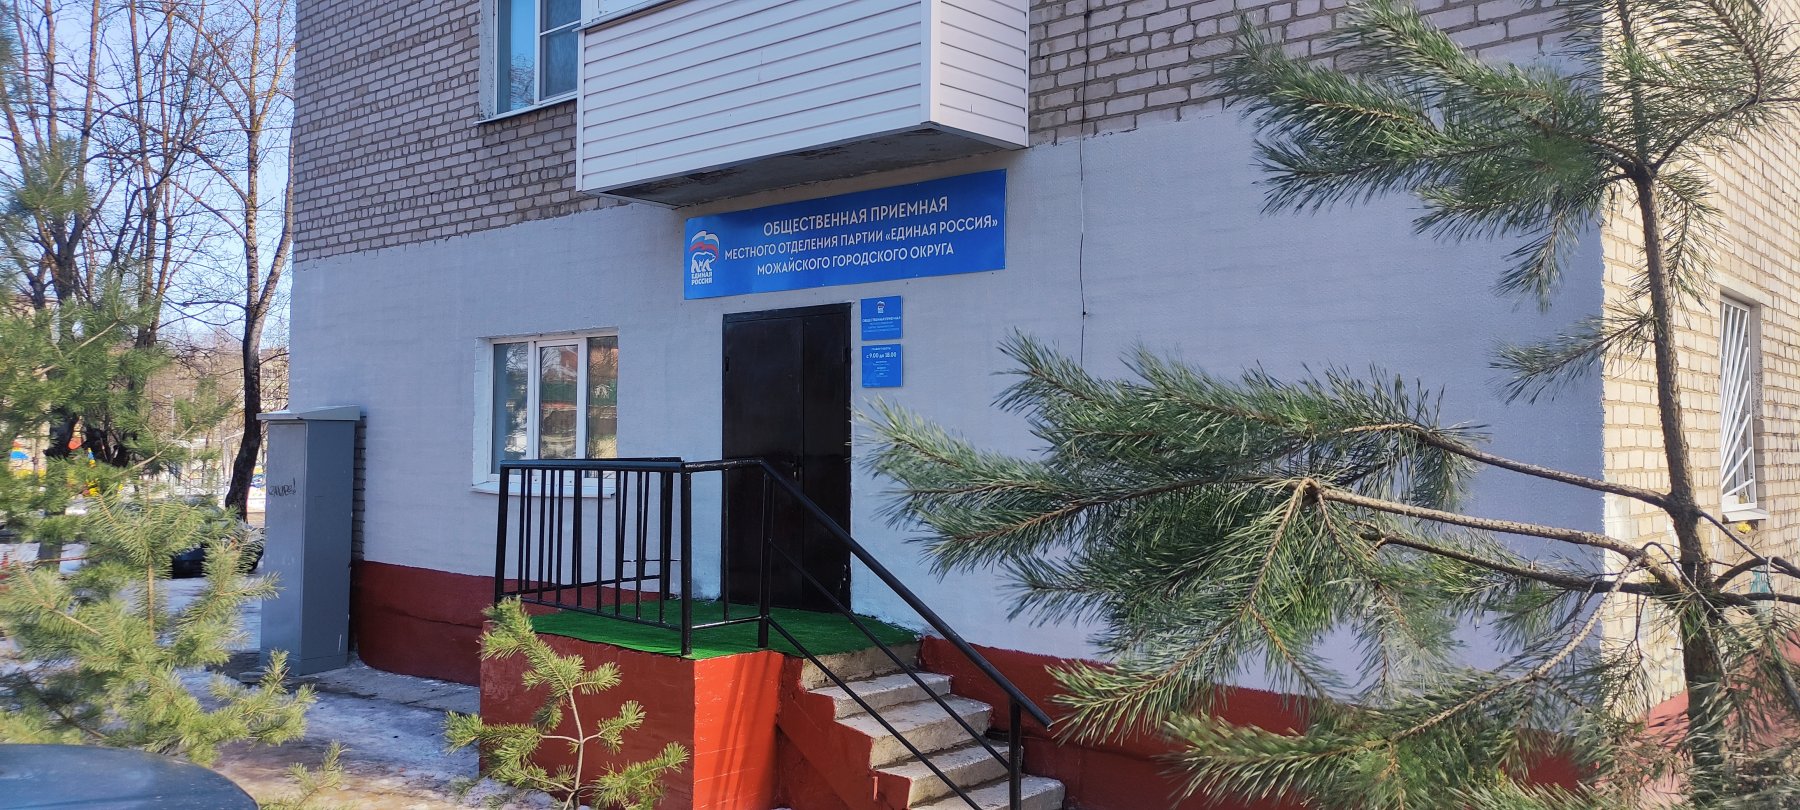 Напротив администрации Можайска за полгода до выборов открыли штаб-квартиру «Единой России»